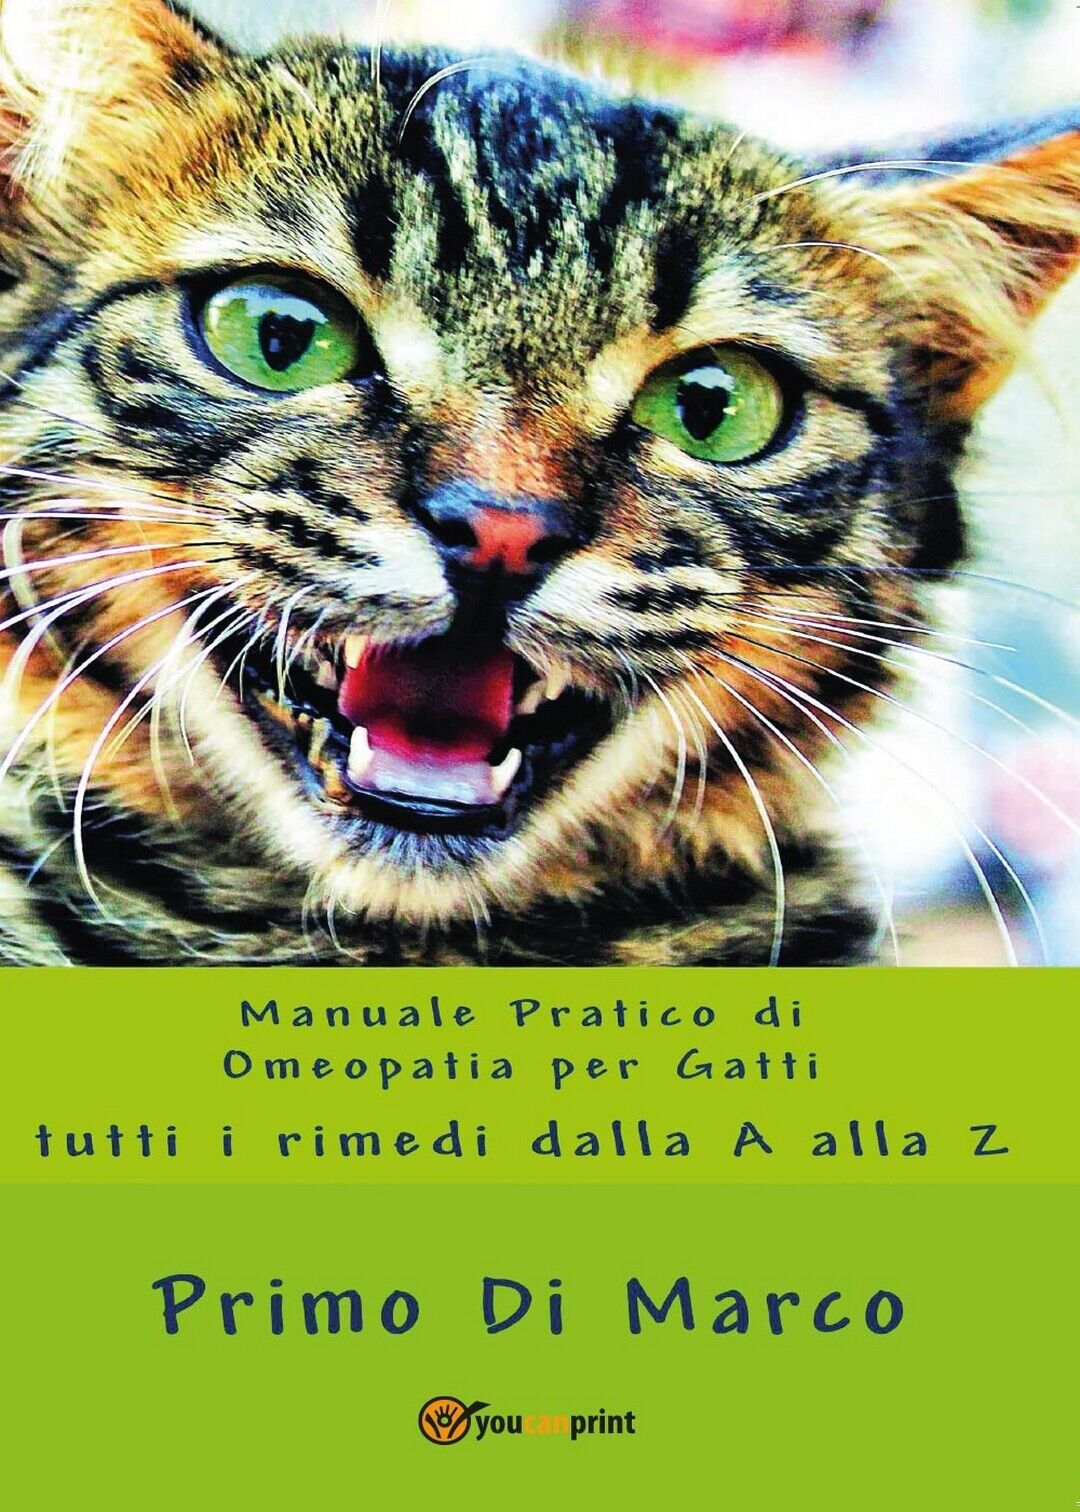 Manuale Pratico Omeopatia per Gatti  di Rimo Di Marco,  2017,  Youcanprint